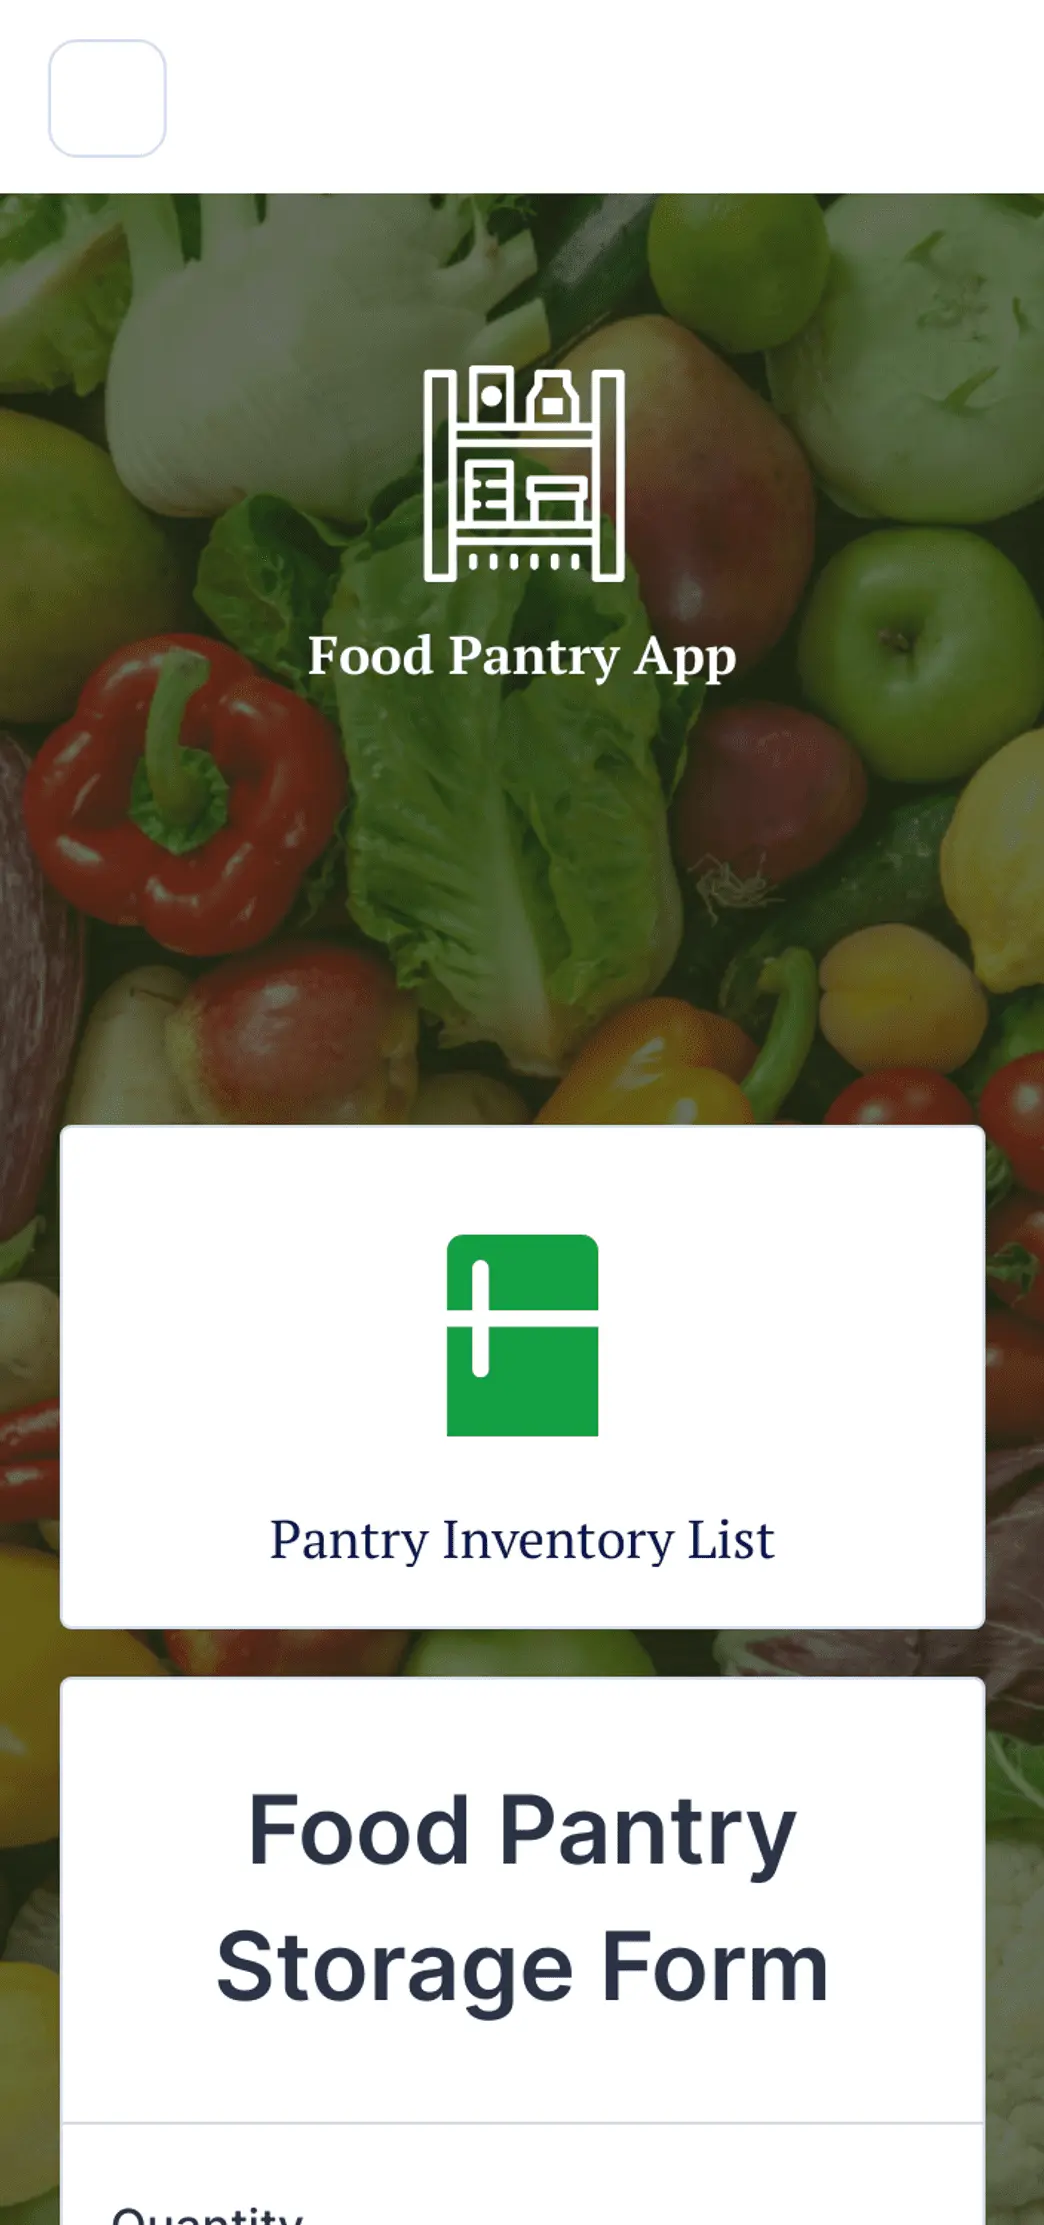 Food Pantry App